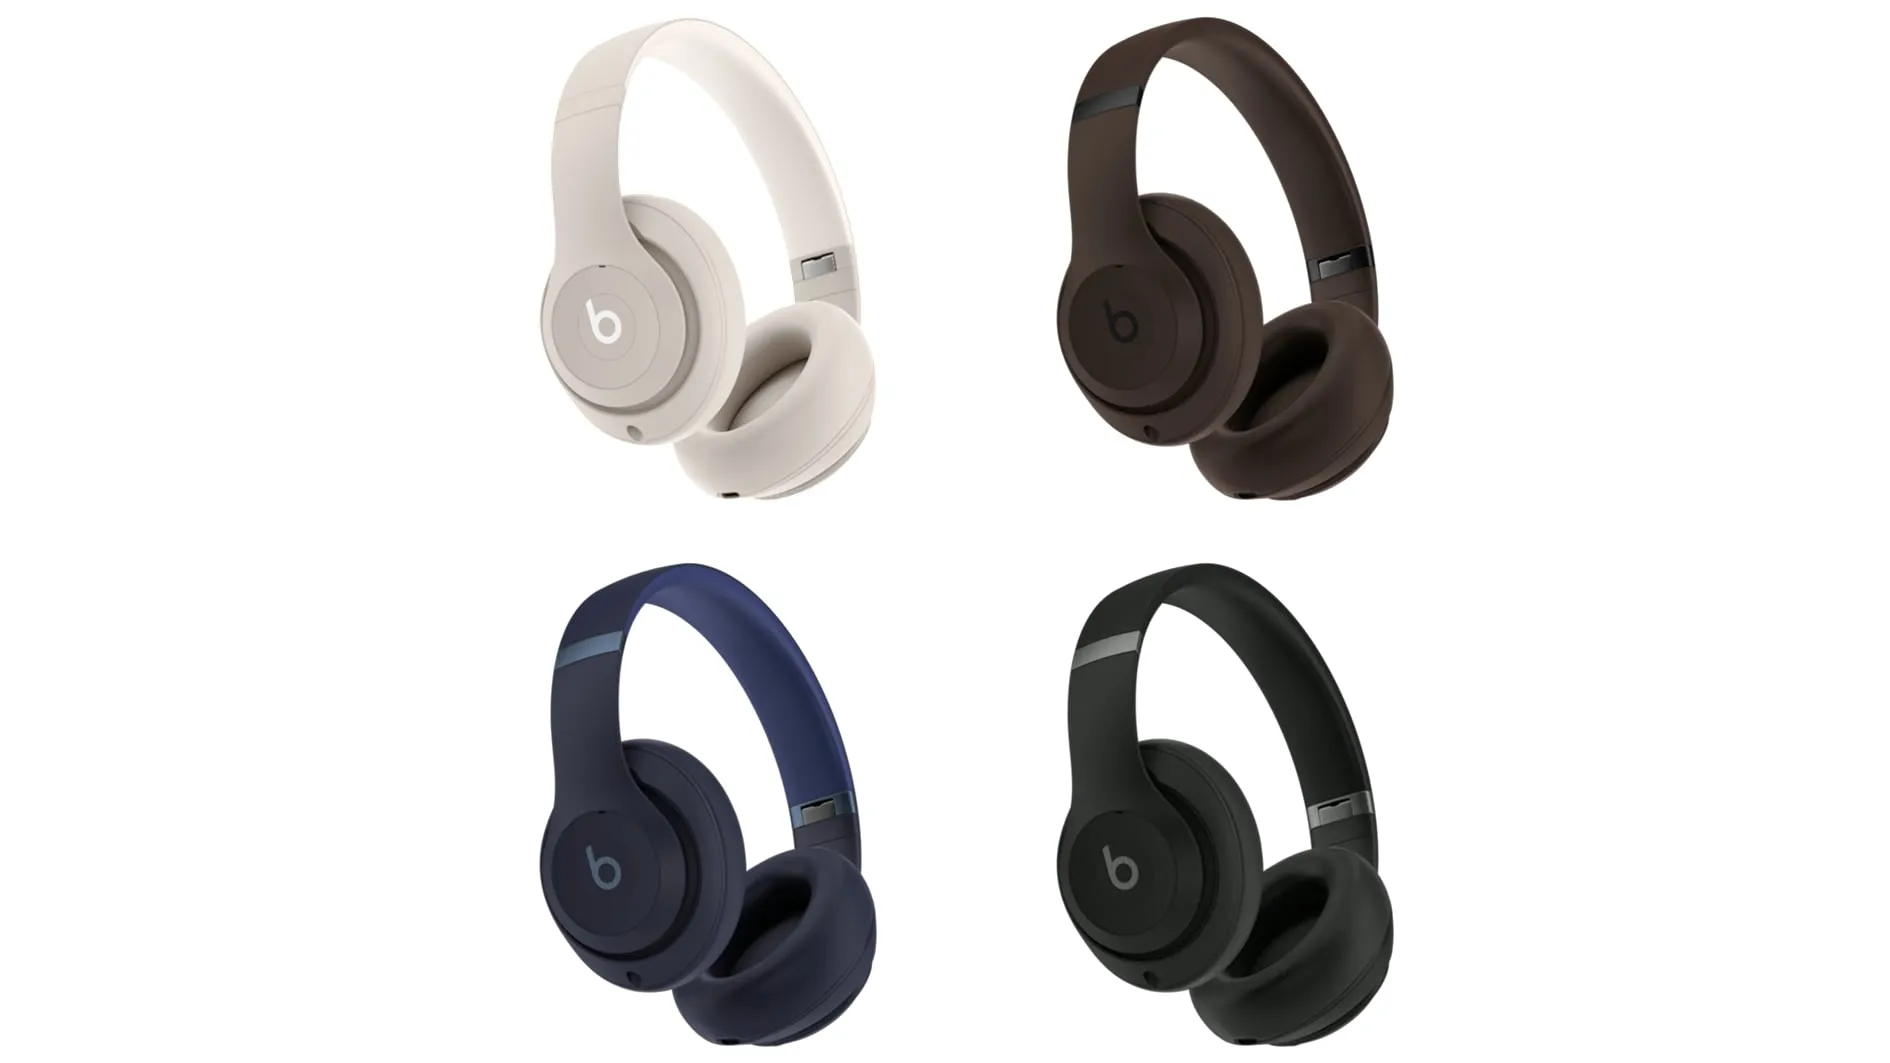 Four Beats Studio Pro over-ear-hörlurar i vitt, brunt, mörkblått och svart, mot en vit bakgrund